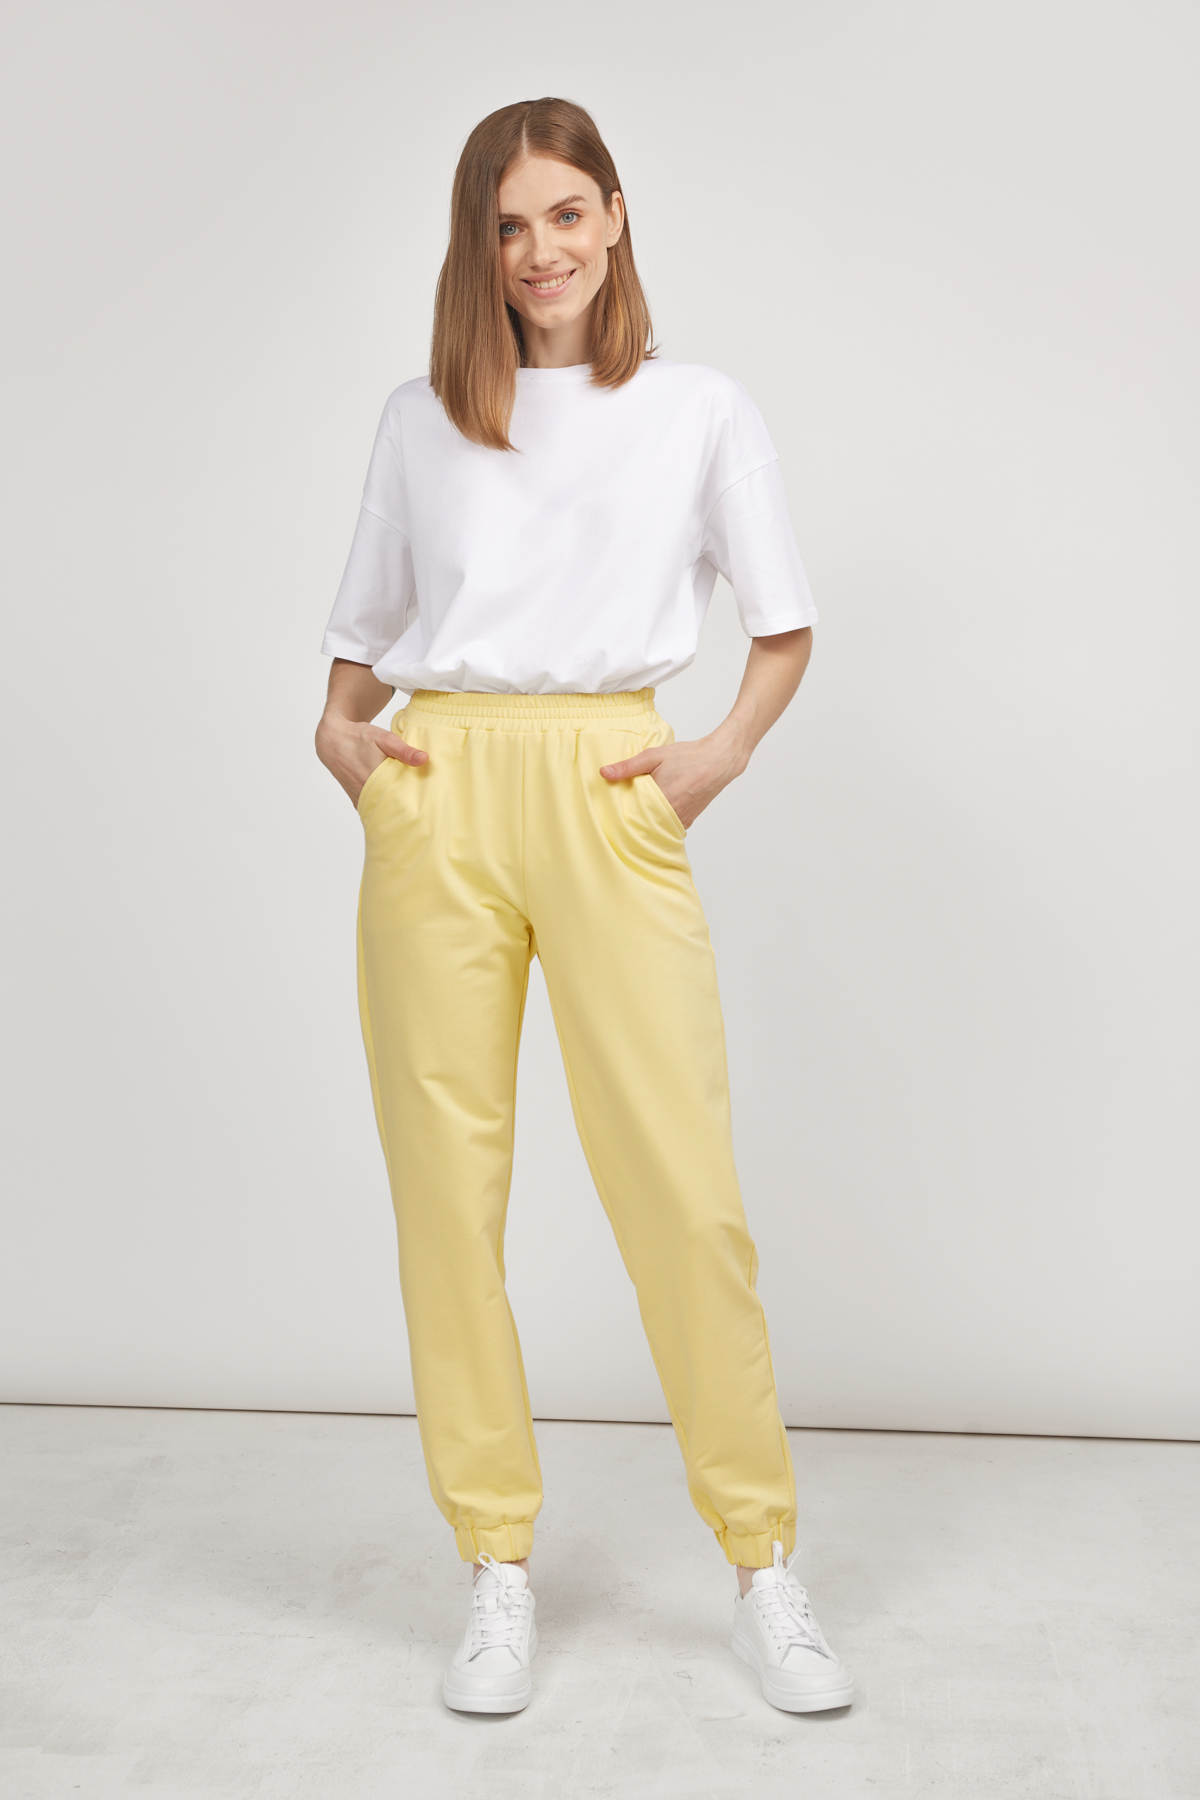 Трикотажные брюки-джоггеры лимонного цвета , фото 2